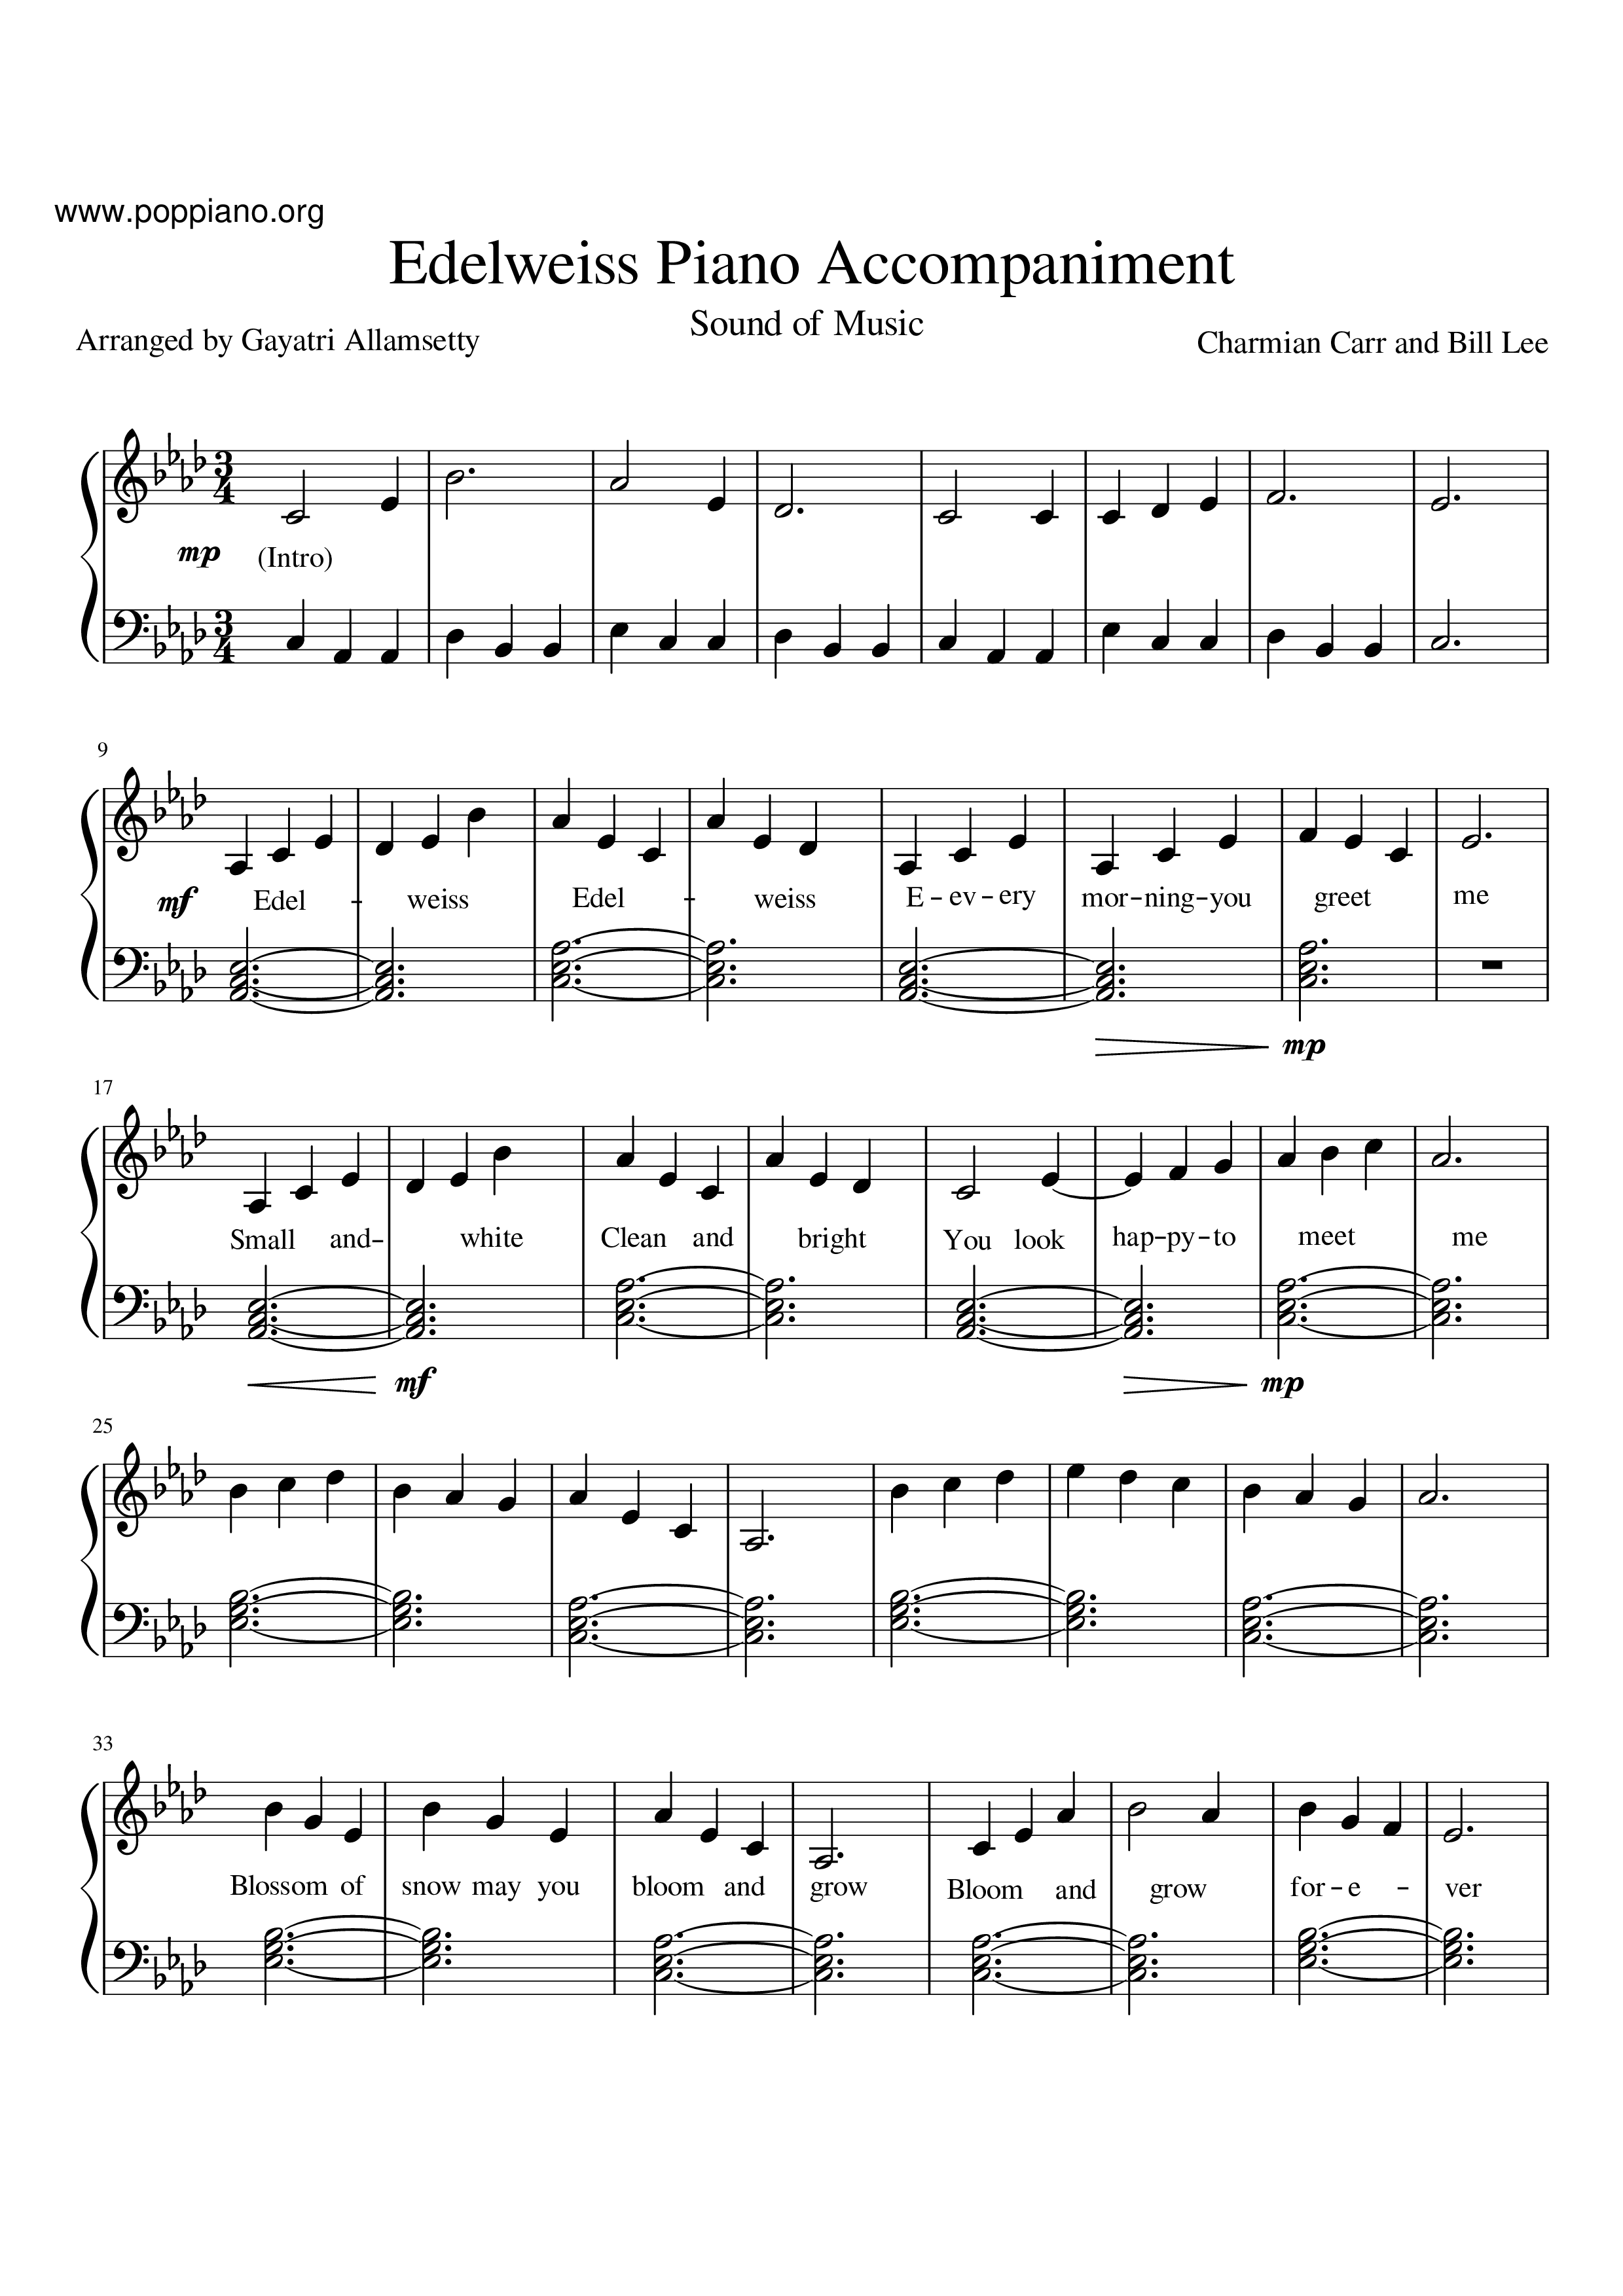 Theodore Bikel-The Sound of Music - Edelweiss 琴譜pdf-エーデルワイス 楽譜-香港流行鋼琴協會 ...